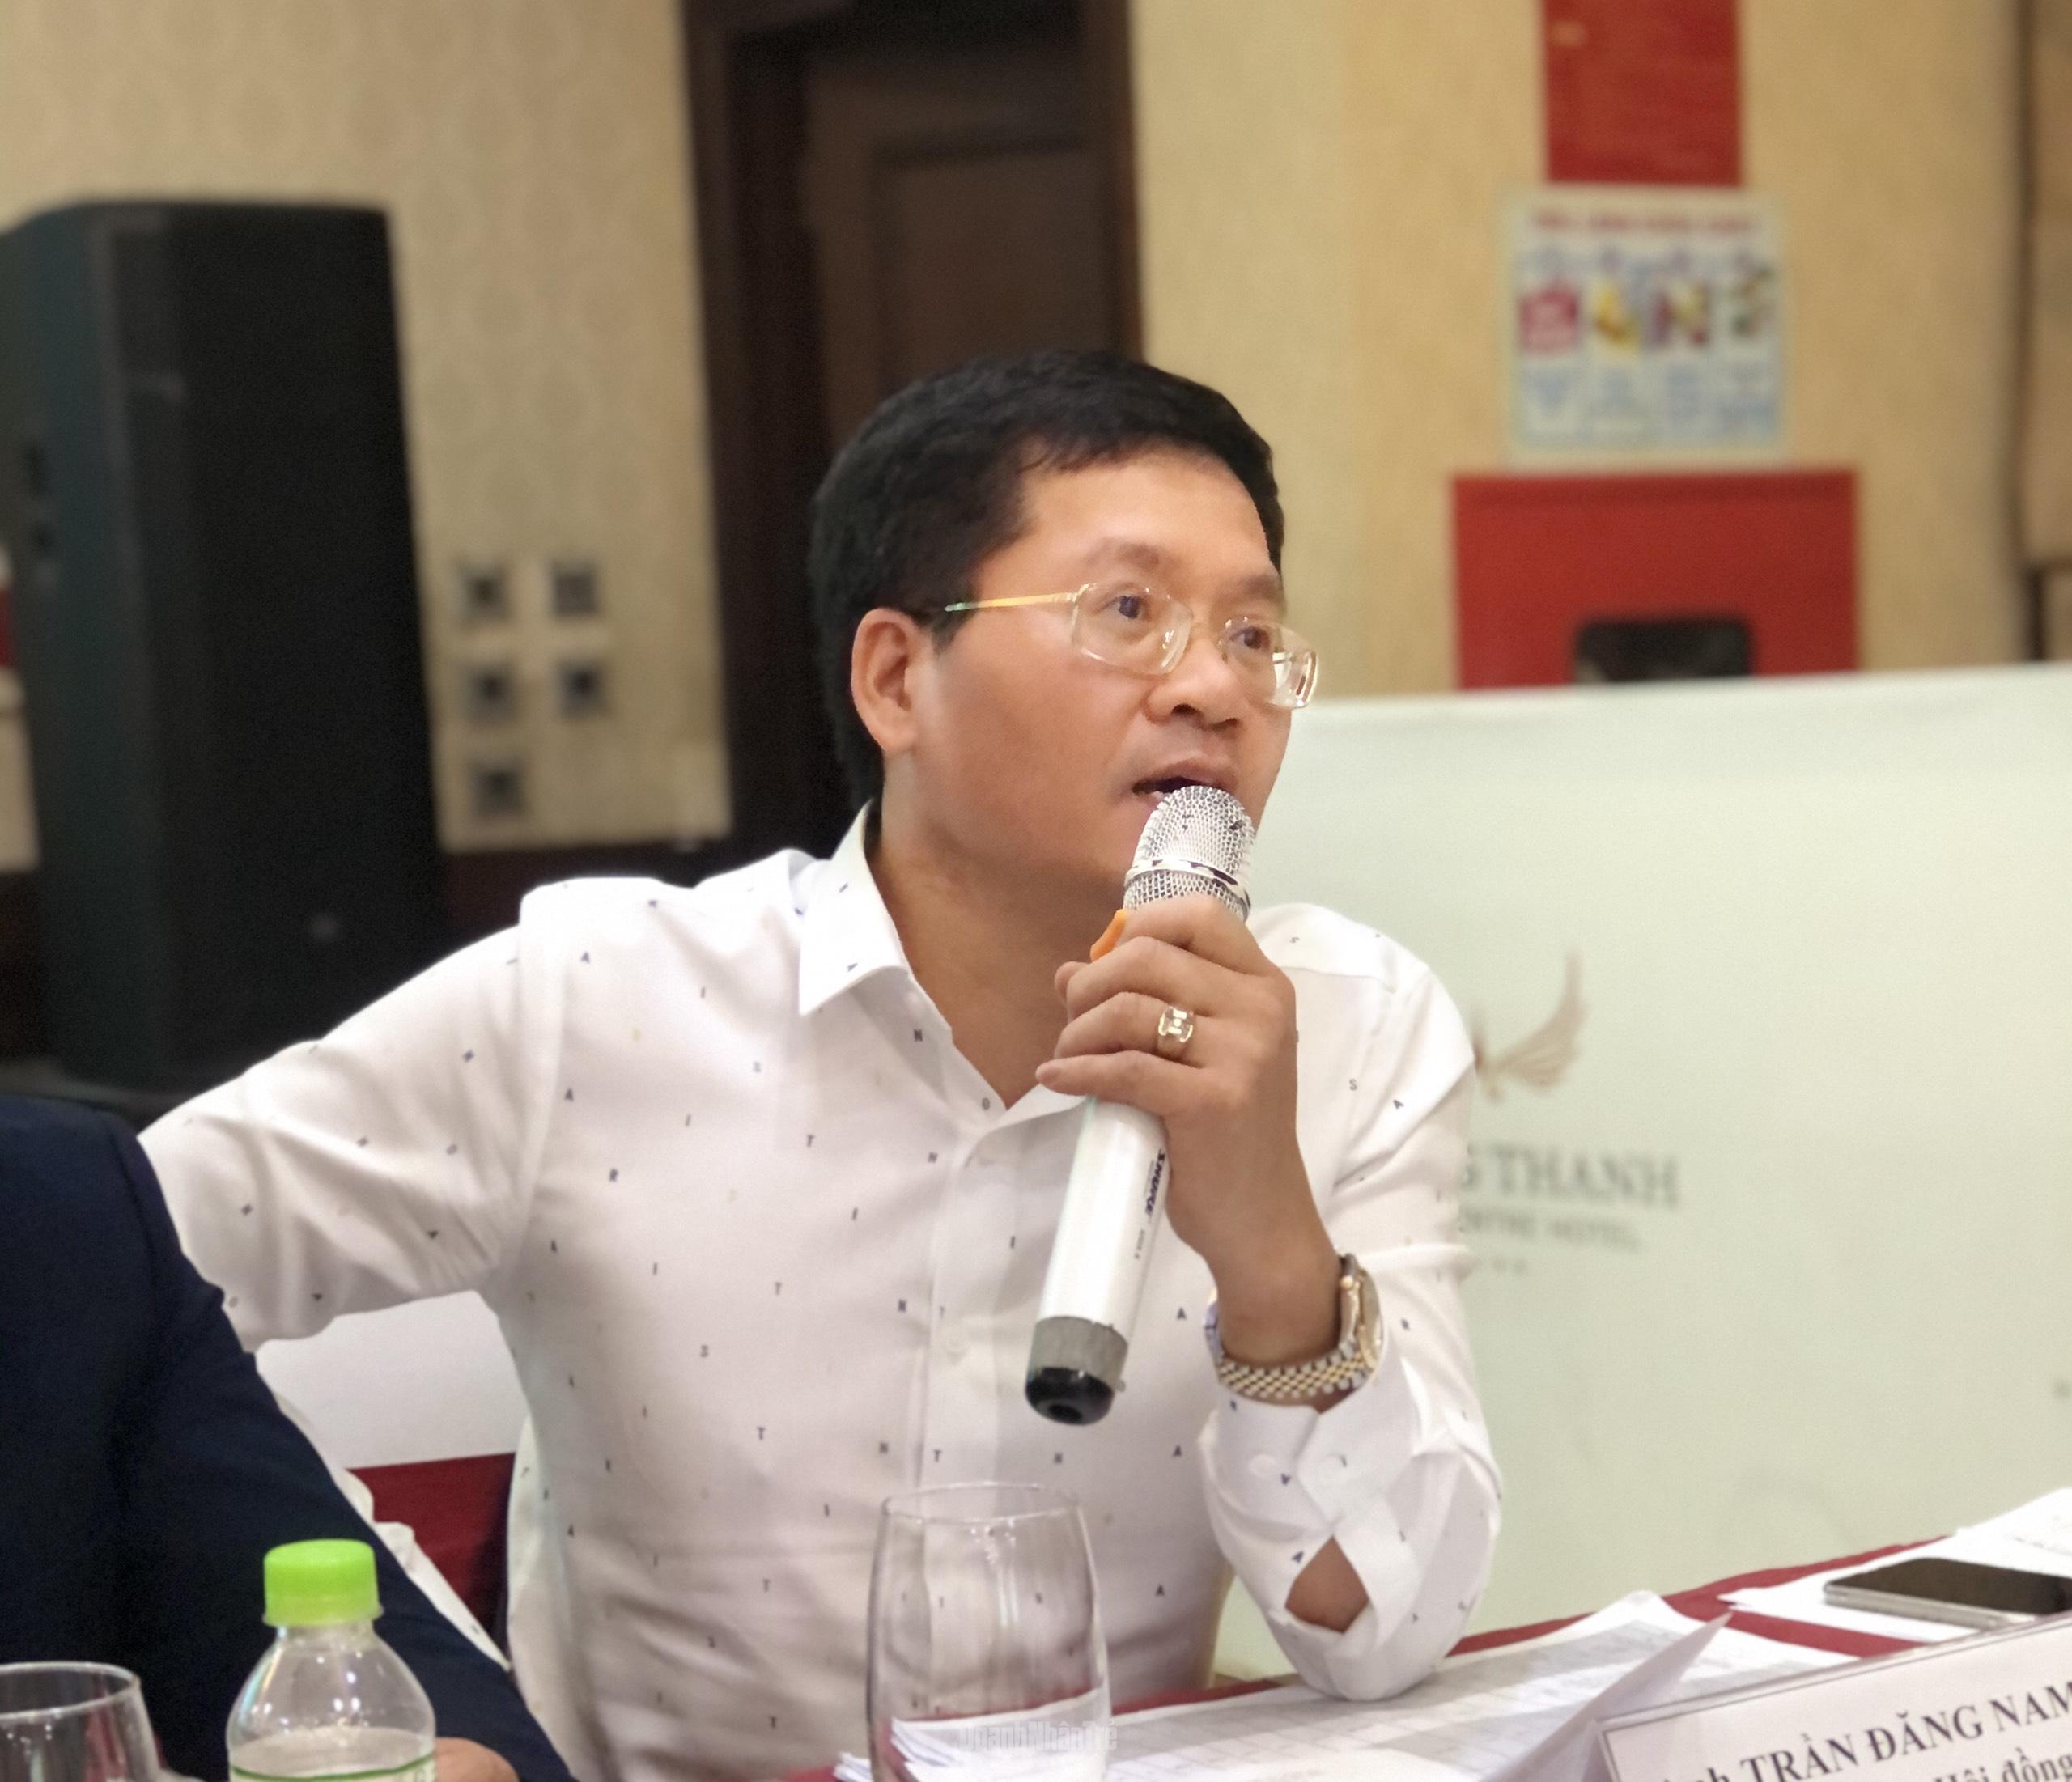 Ông Trần Đăng Nam, Phó Chủ tịch Hội Doanh nhân trẻ Việt Nam, Phó Chủ tịch Hội đồng Bình chọn, đề xuất các thành viên Hội đồng Bình chọn nên xem xét kĩ lưỡng vai trò của các ứng viên trong doanh nghiệp.